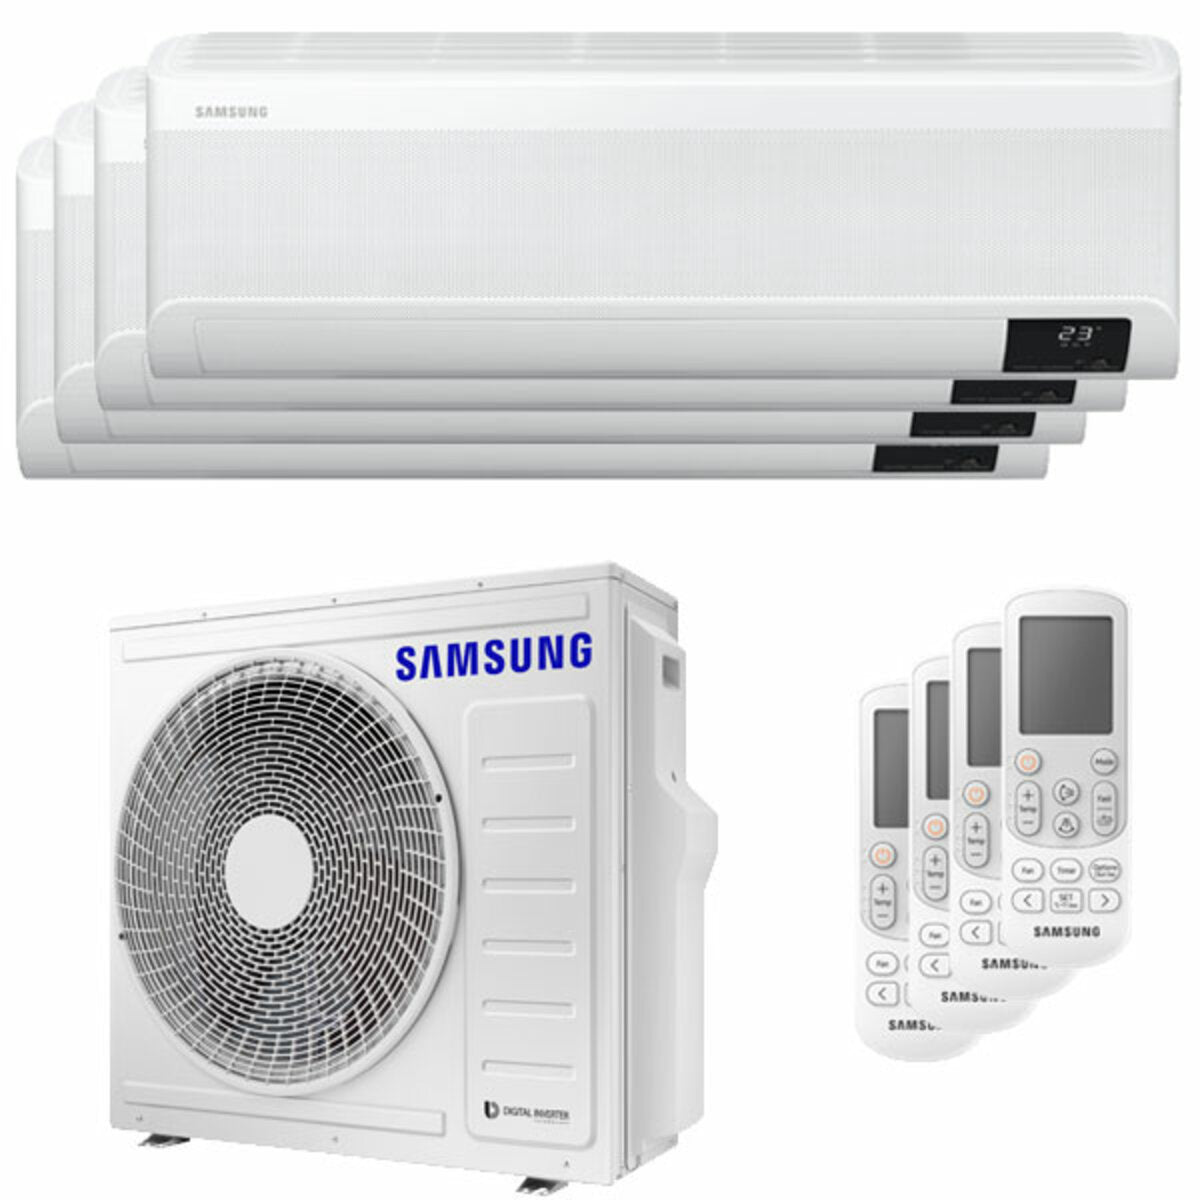 Samsung windfreie Klimaanlage Avant Quadri Split 7000 + 7000 + 7000 + 9000 BTU Inverter A++ WLAN Außengerät 8,0 kW